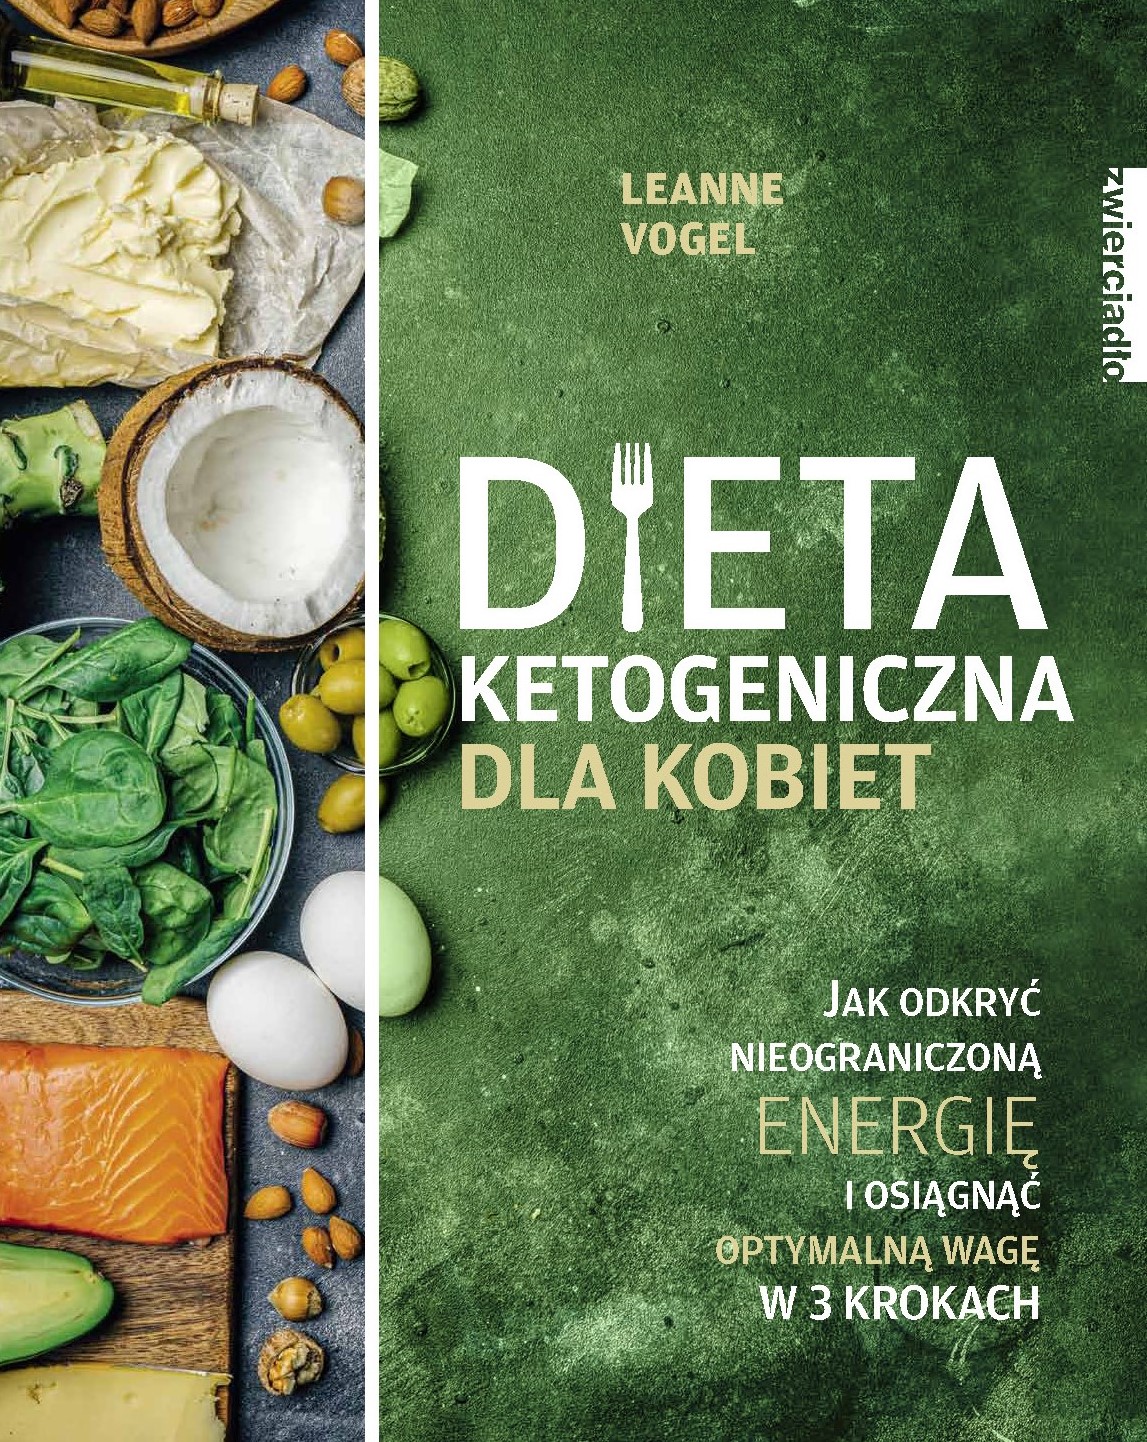 Dieta ketogeniczna dla kobiet Leanne Vogel Zwierciadlo.pl